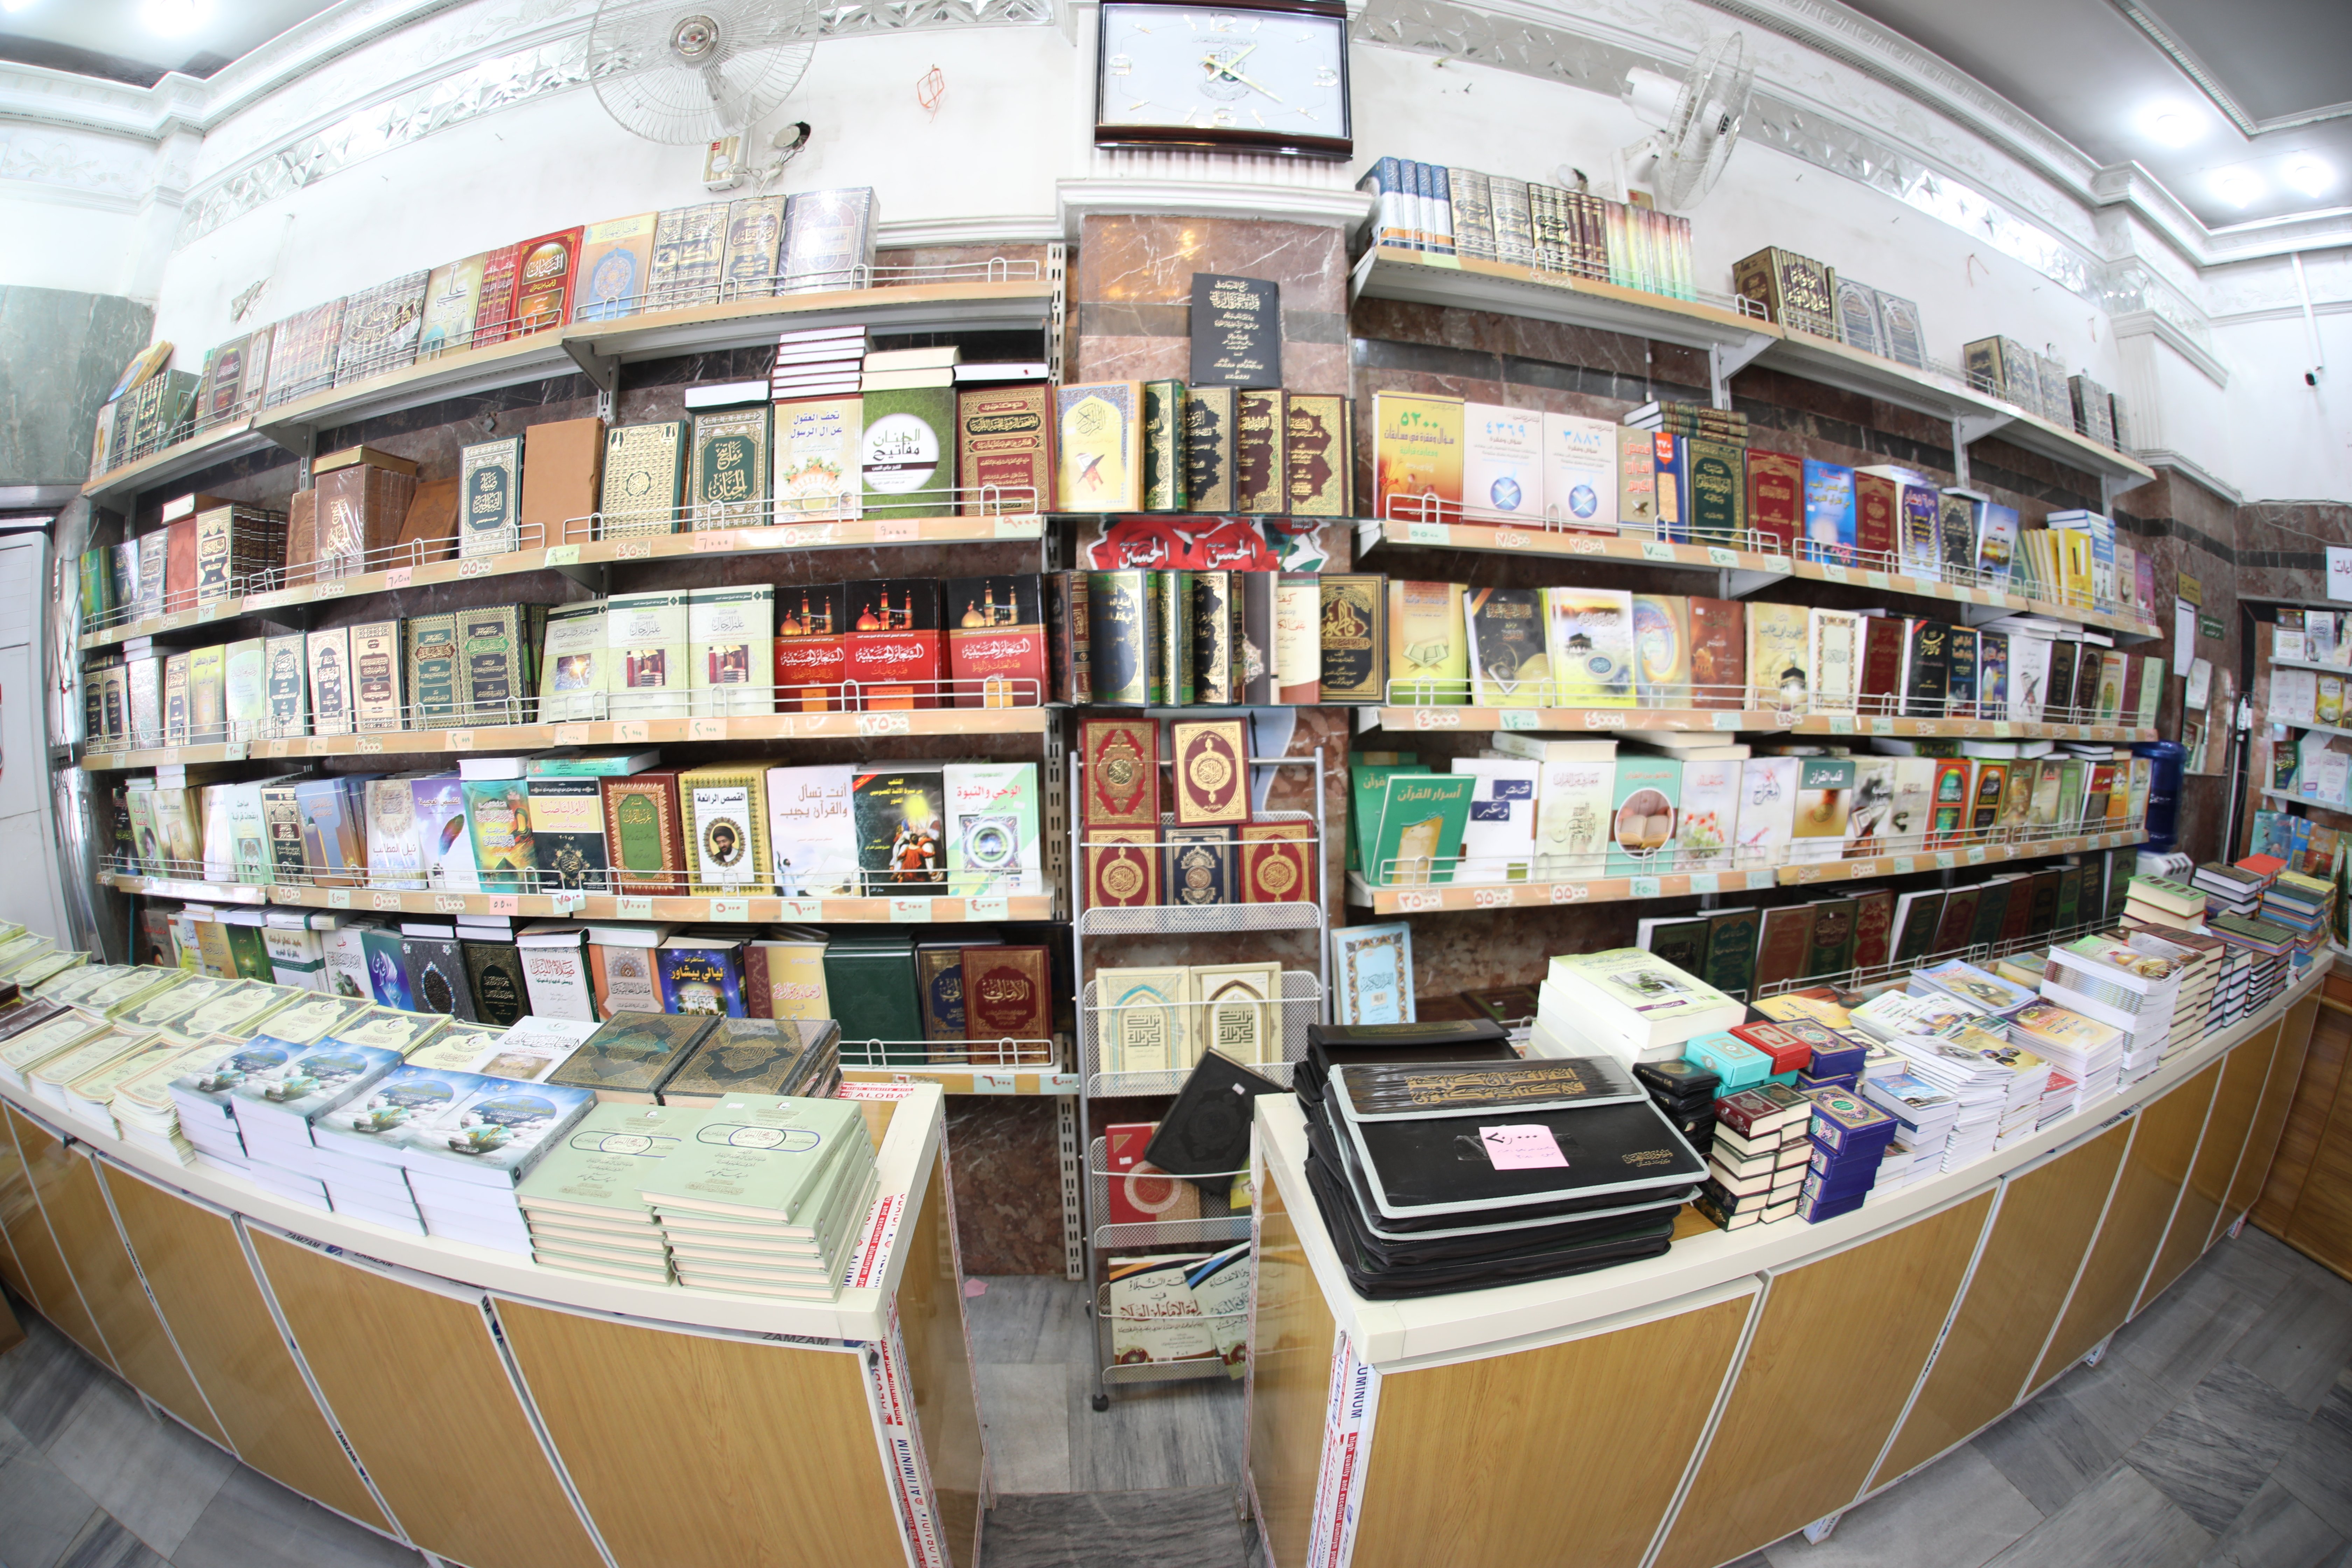 مبيعات معهد القرآن الكريم رافد قرآني يقصده المختصون للتزود بشتى المصادر المهمة